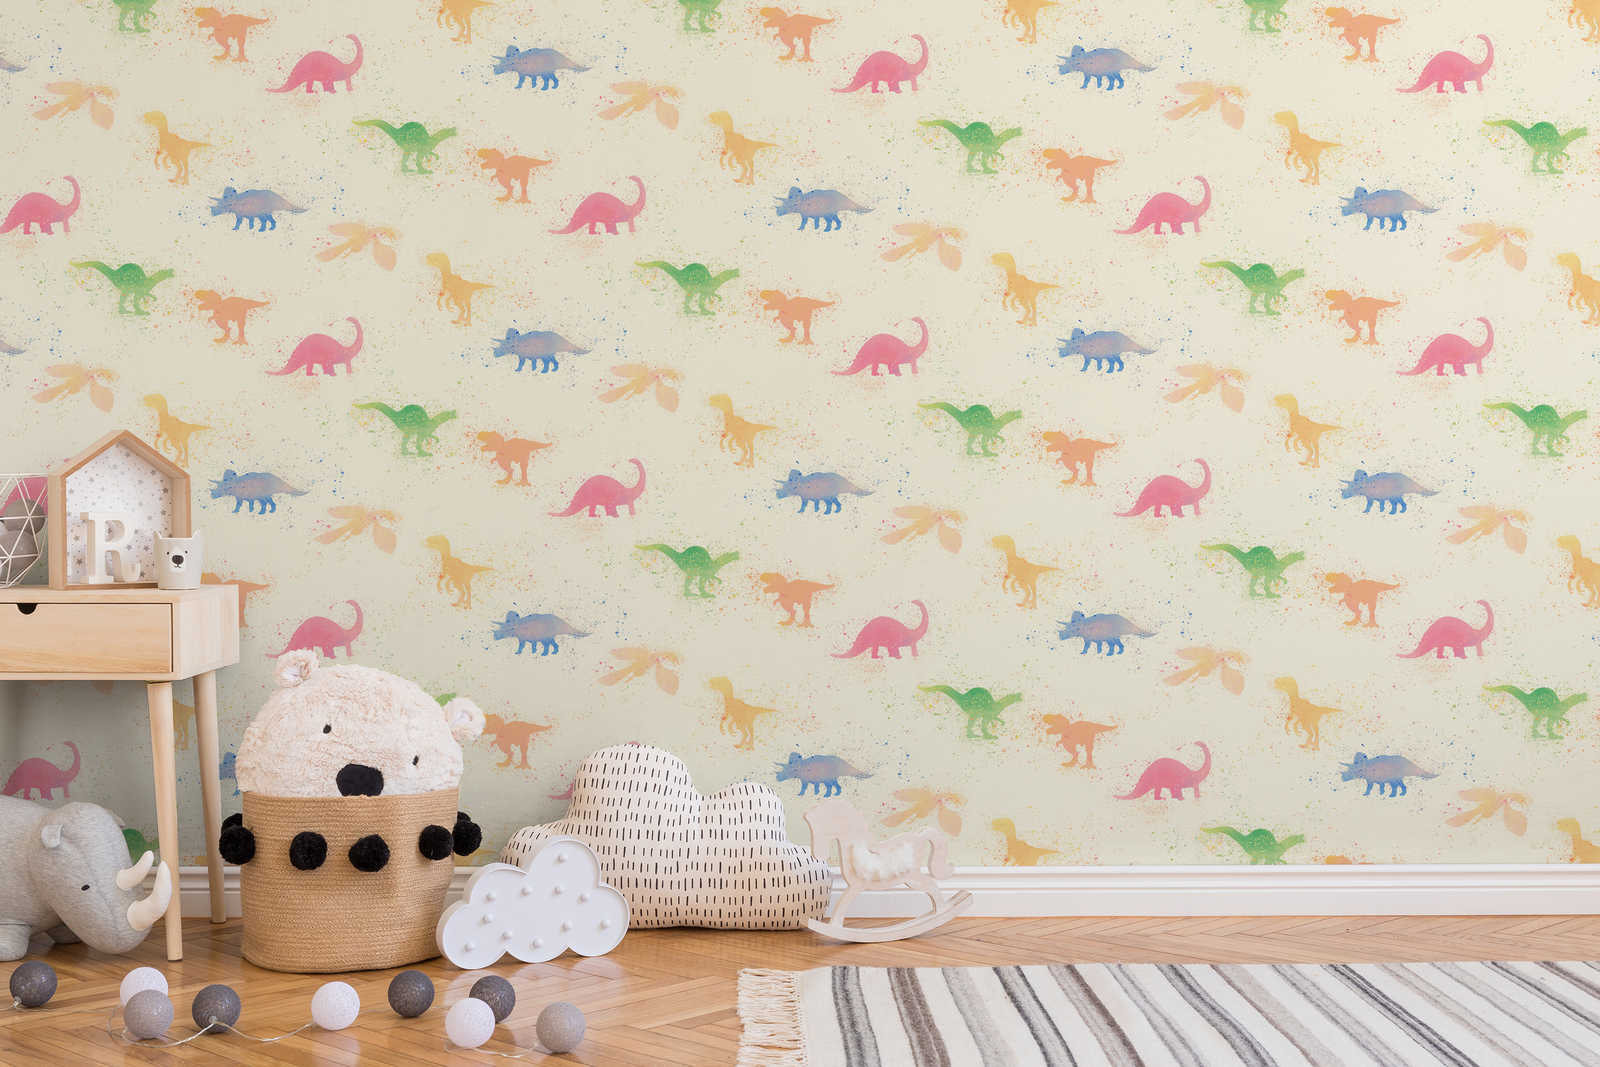             Dino papier peint aquarelle chambre d'enfant - multicolore, beige, rose
        